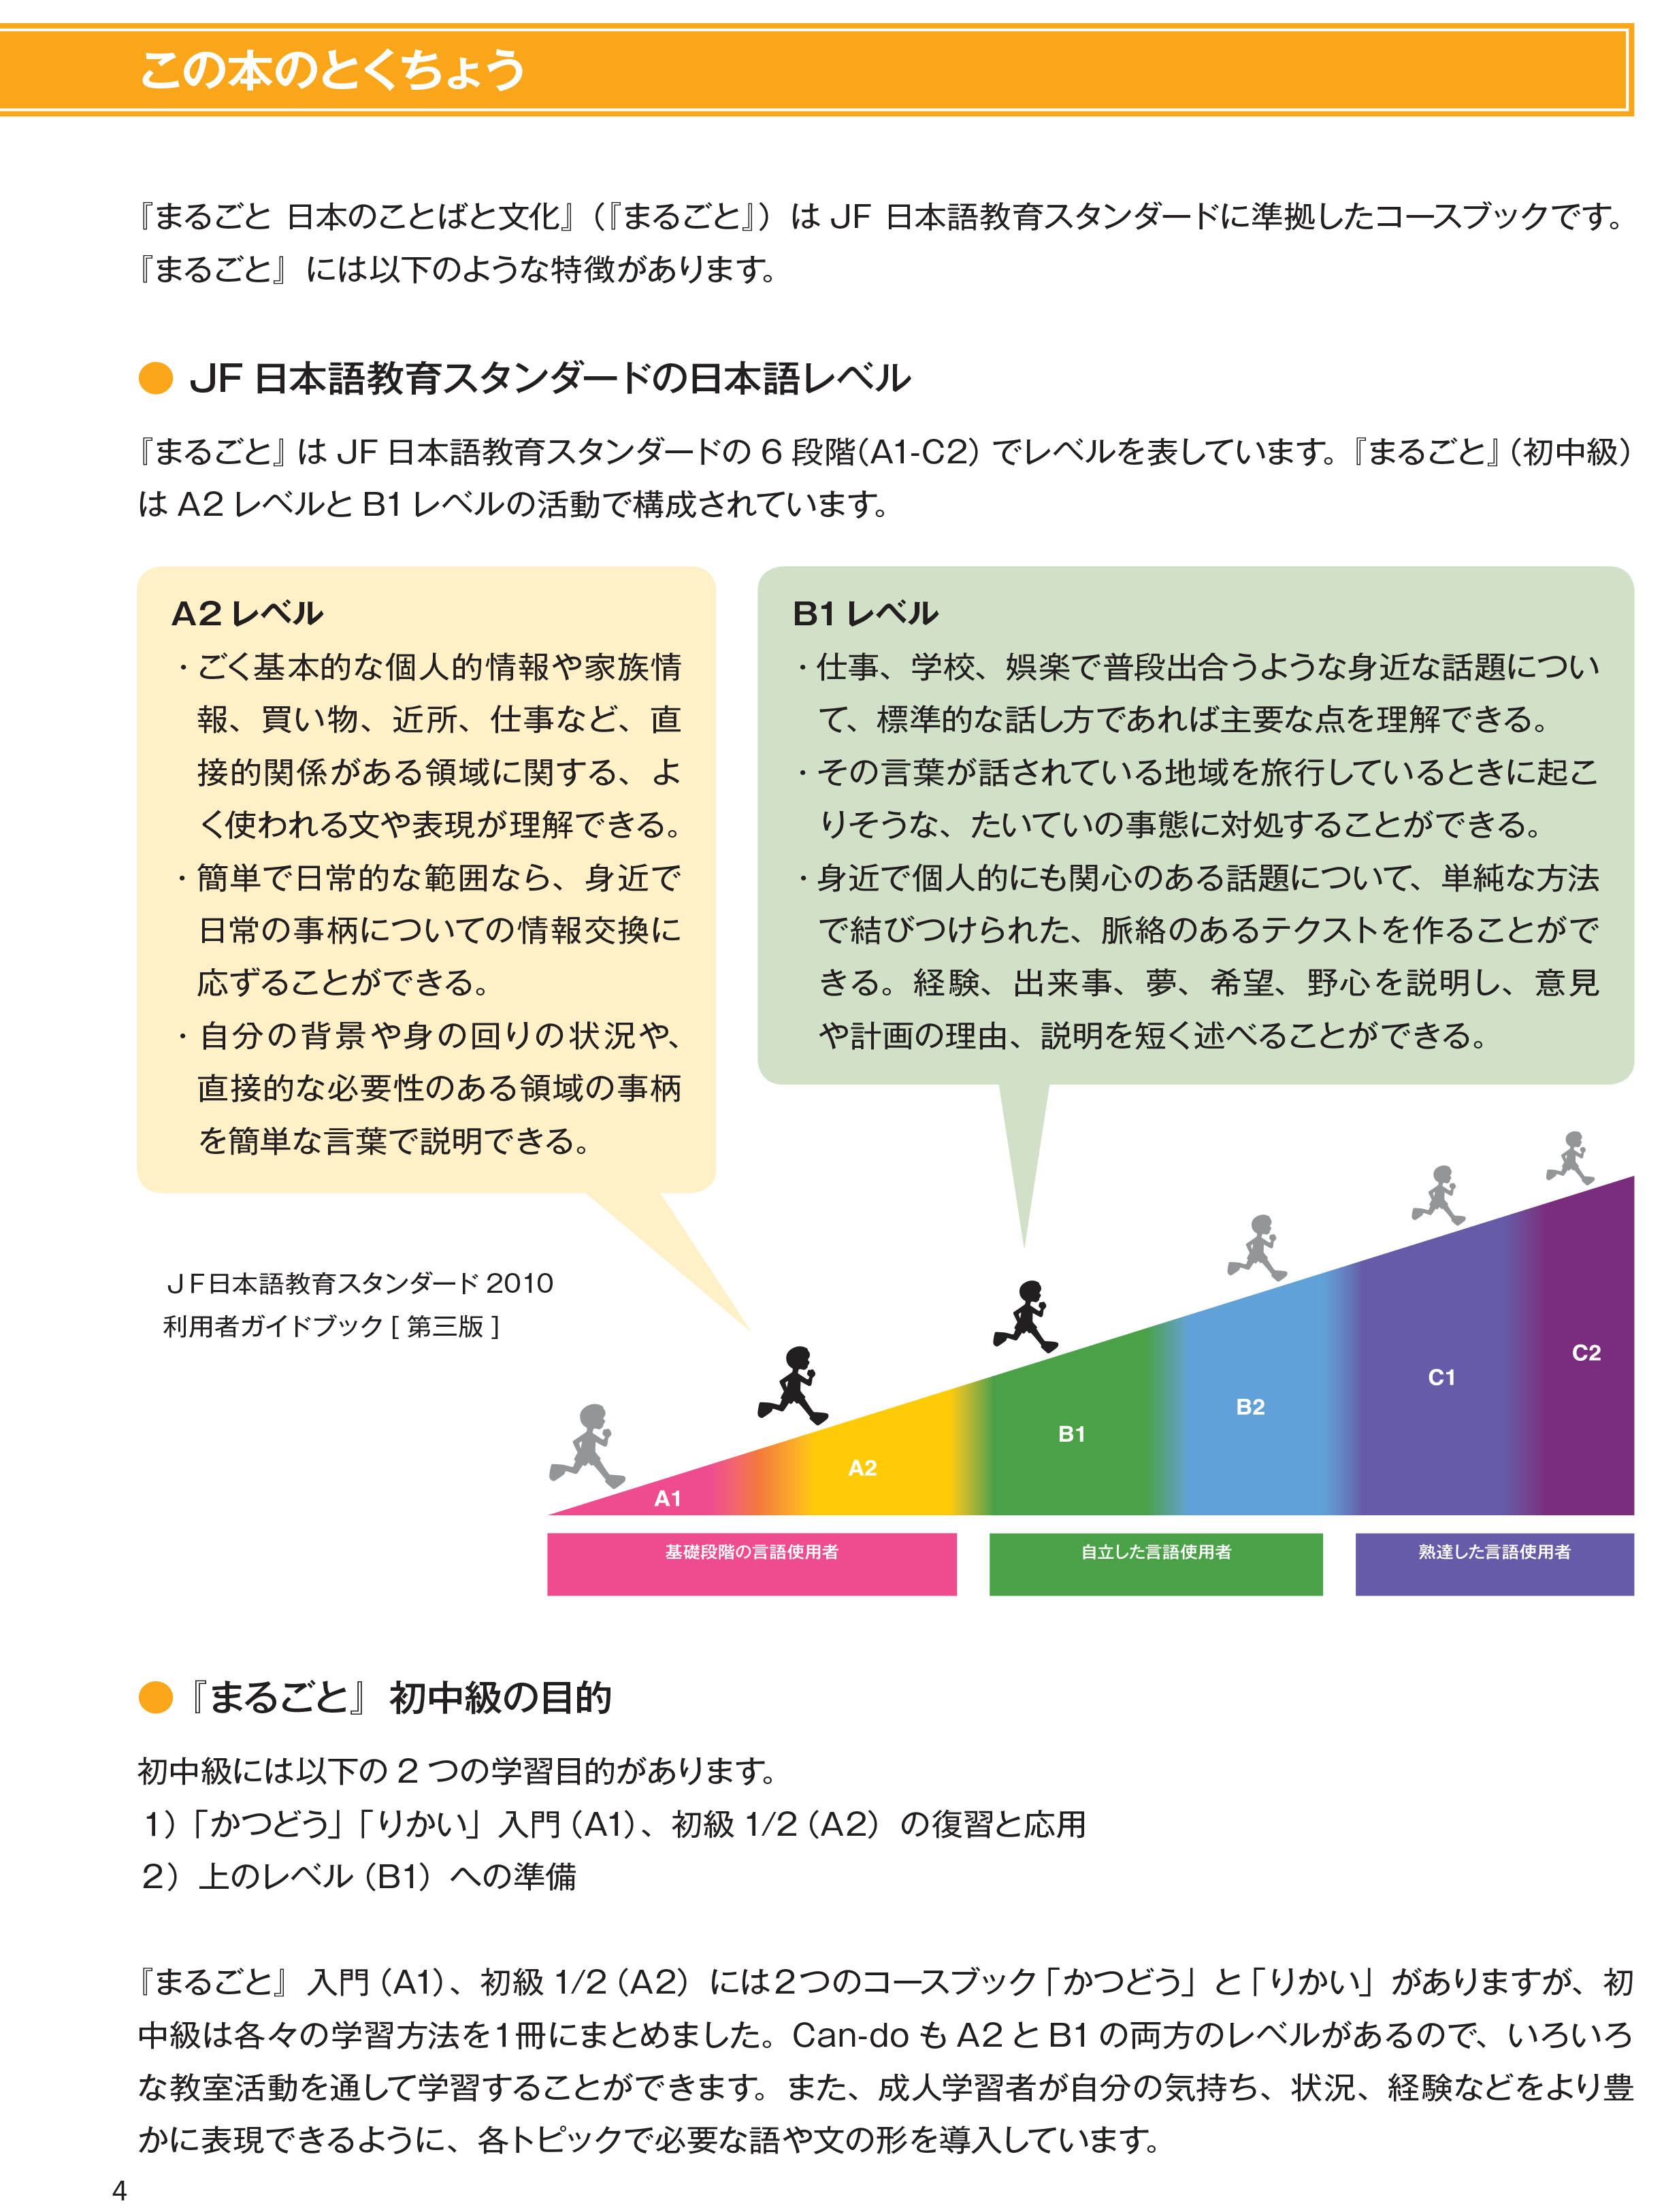 Ngôn Ngữ Và Văn Hóa Nhật Bản - Sơ - Trung Cấp A2/B1 PDF